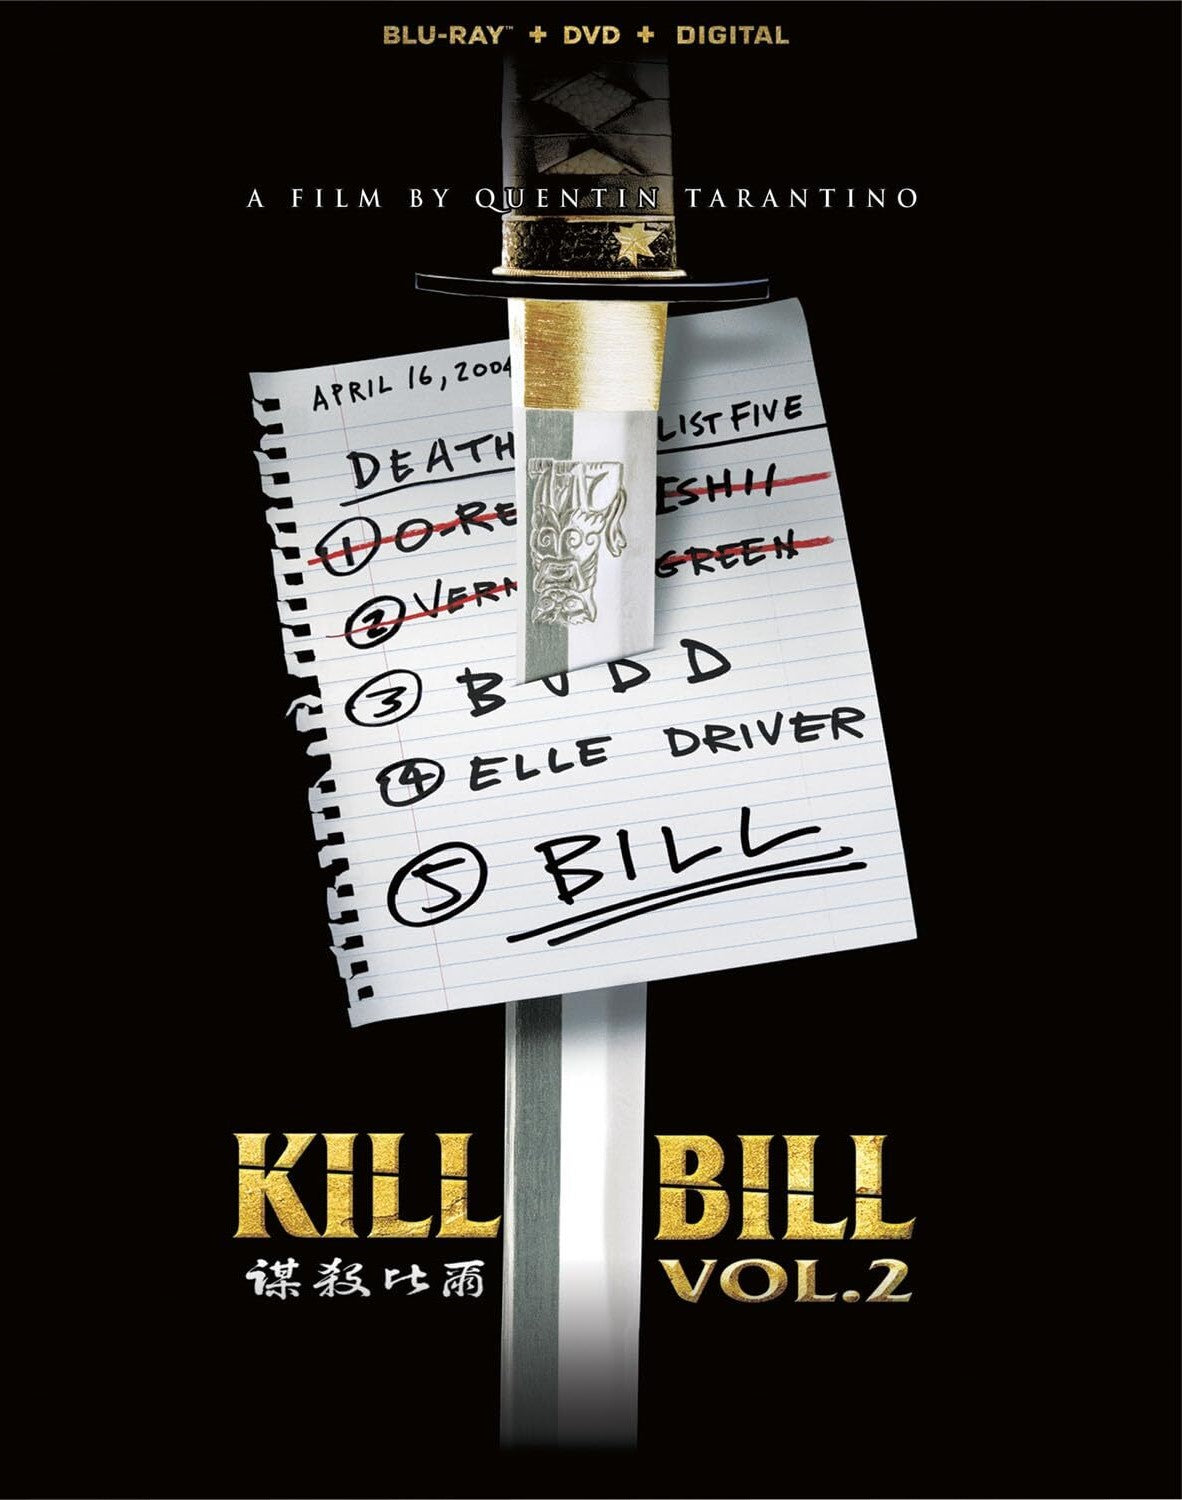 KILL BILL VOLUME 2 BLU-RAY/DVD